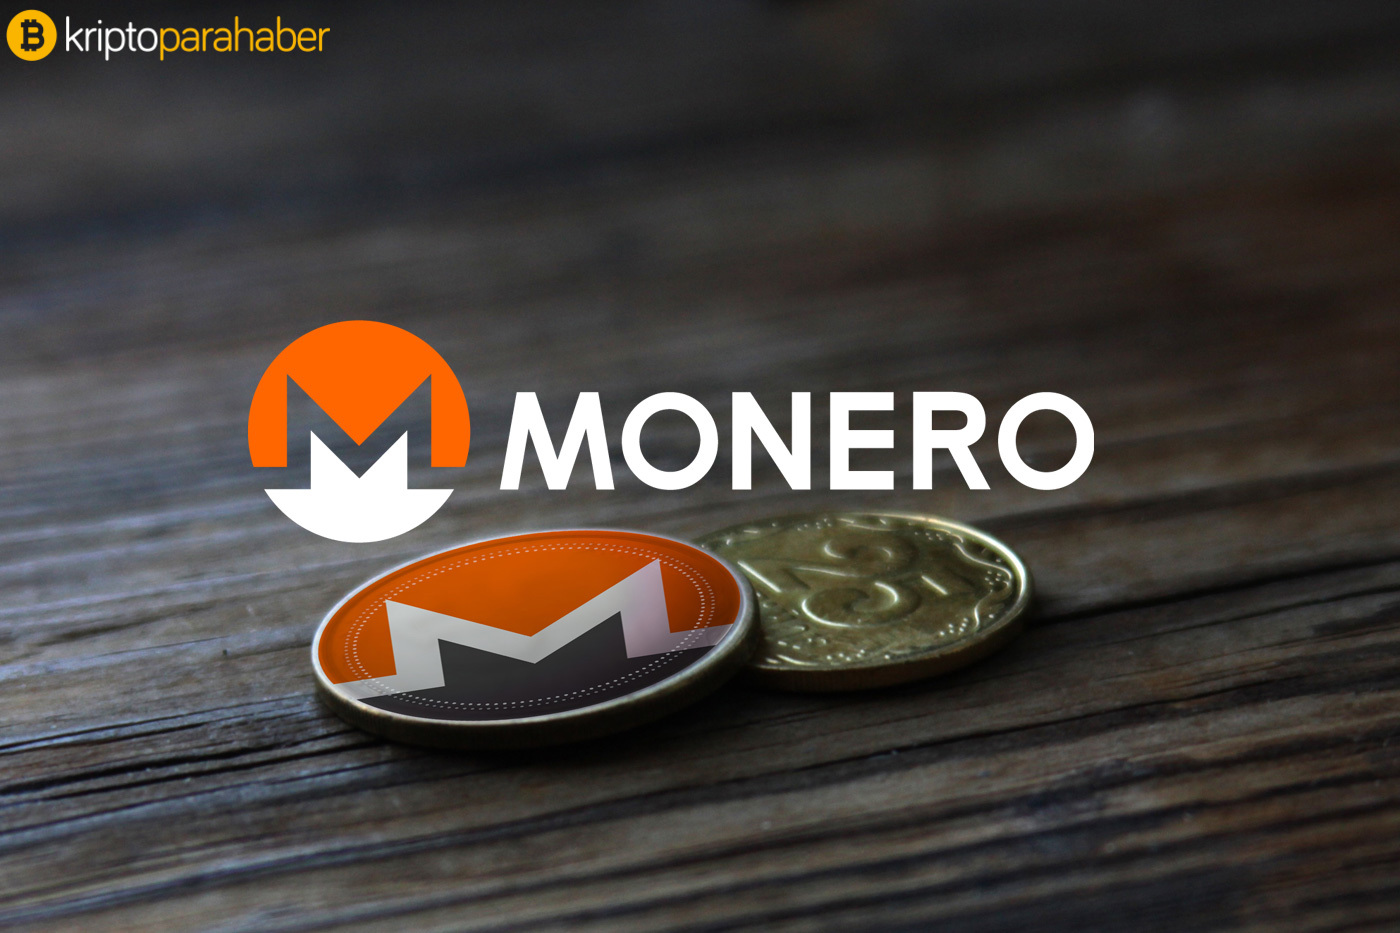 En özel kripto para olan Monero, popülaritesini koruyor